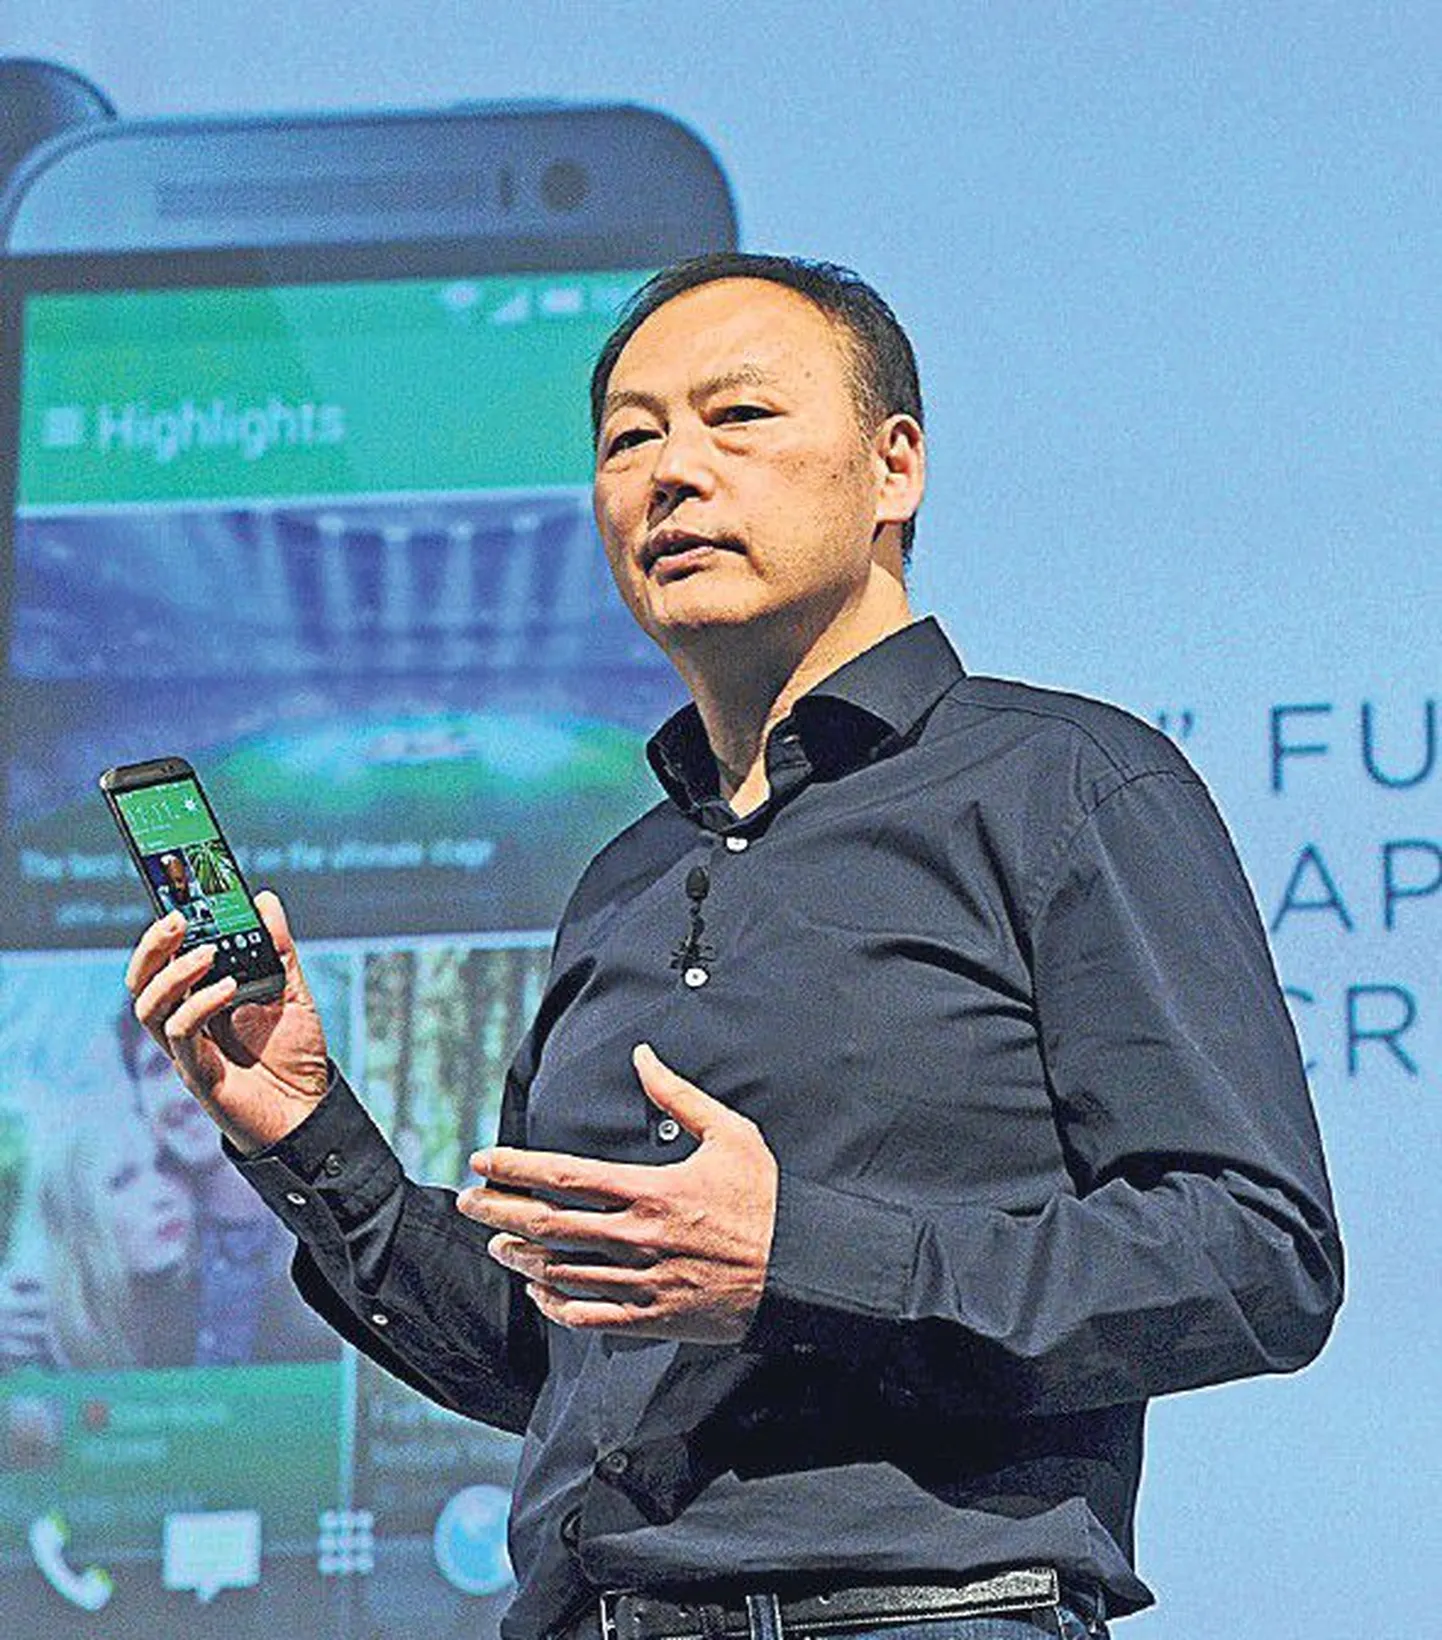 Исполнительный директор HTC Питер Чоу в конце марта представил новый телефон высшего класса под кодовым названием М8. Обеспечит ли он НТС долгожданный взлет?